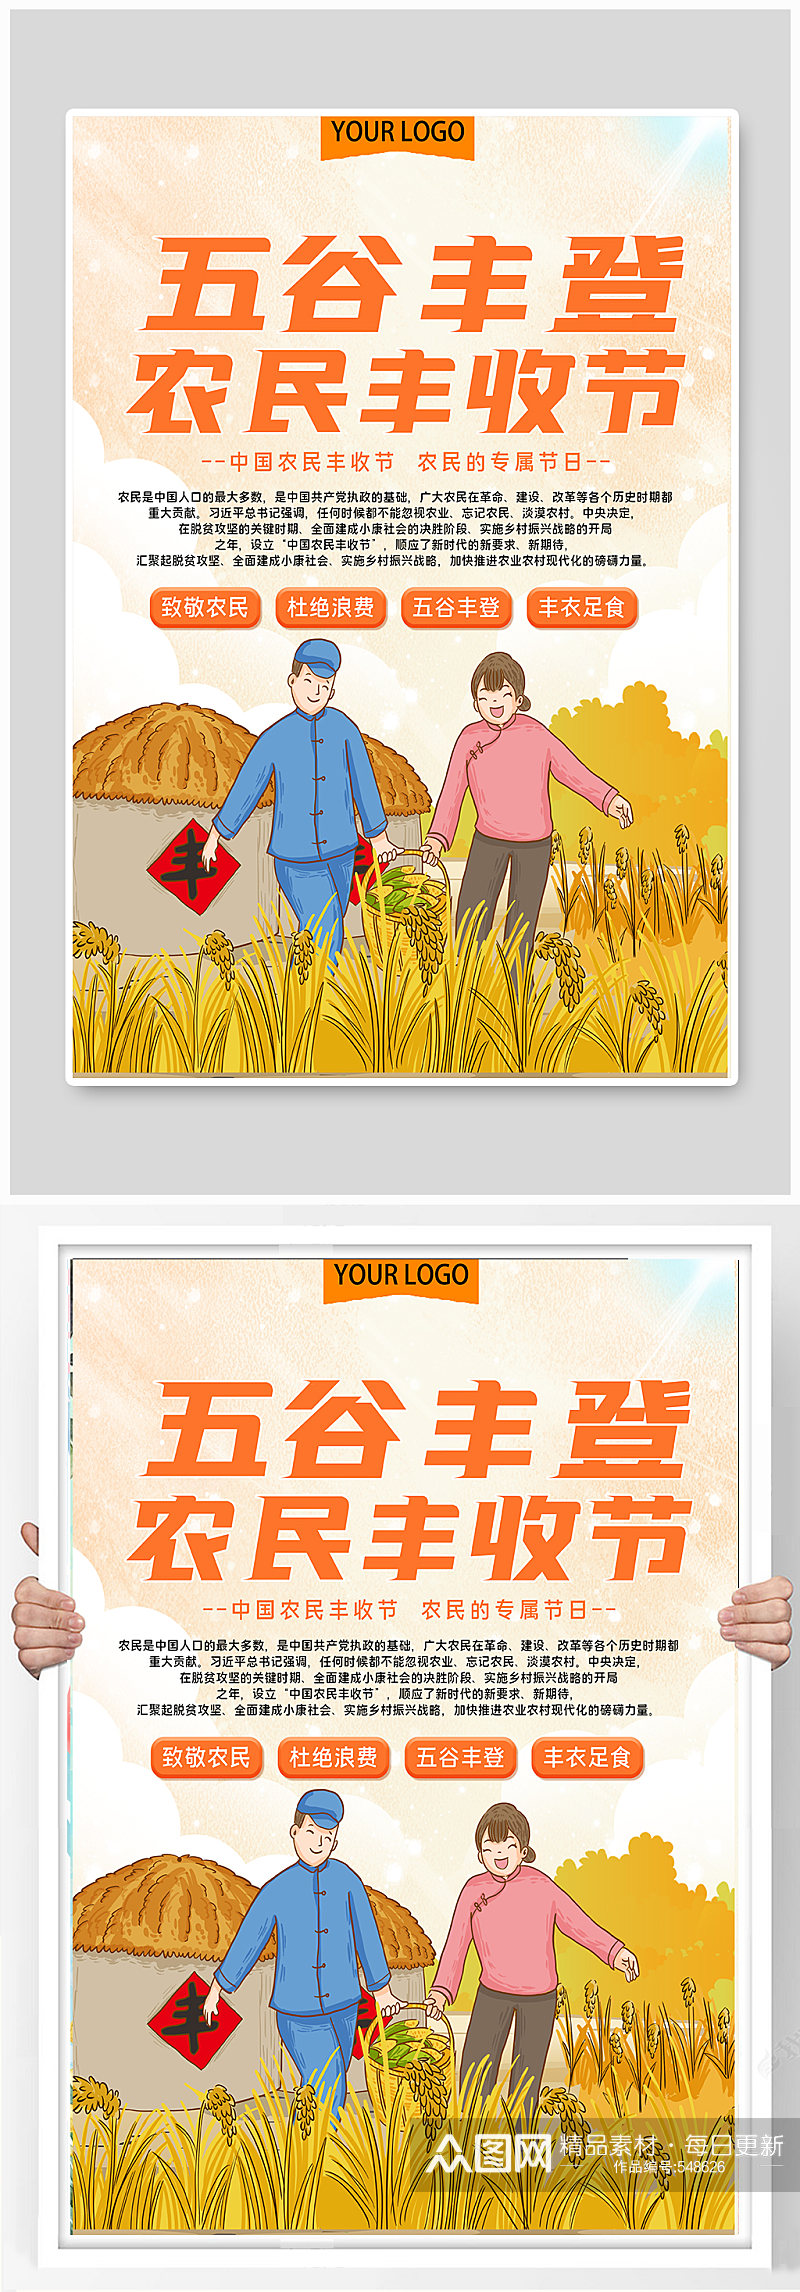 五谷丰登农民丰收节公益宣传海报素材